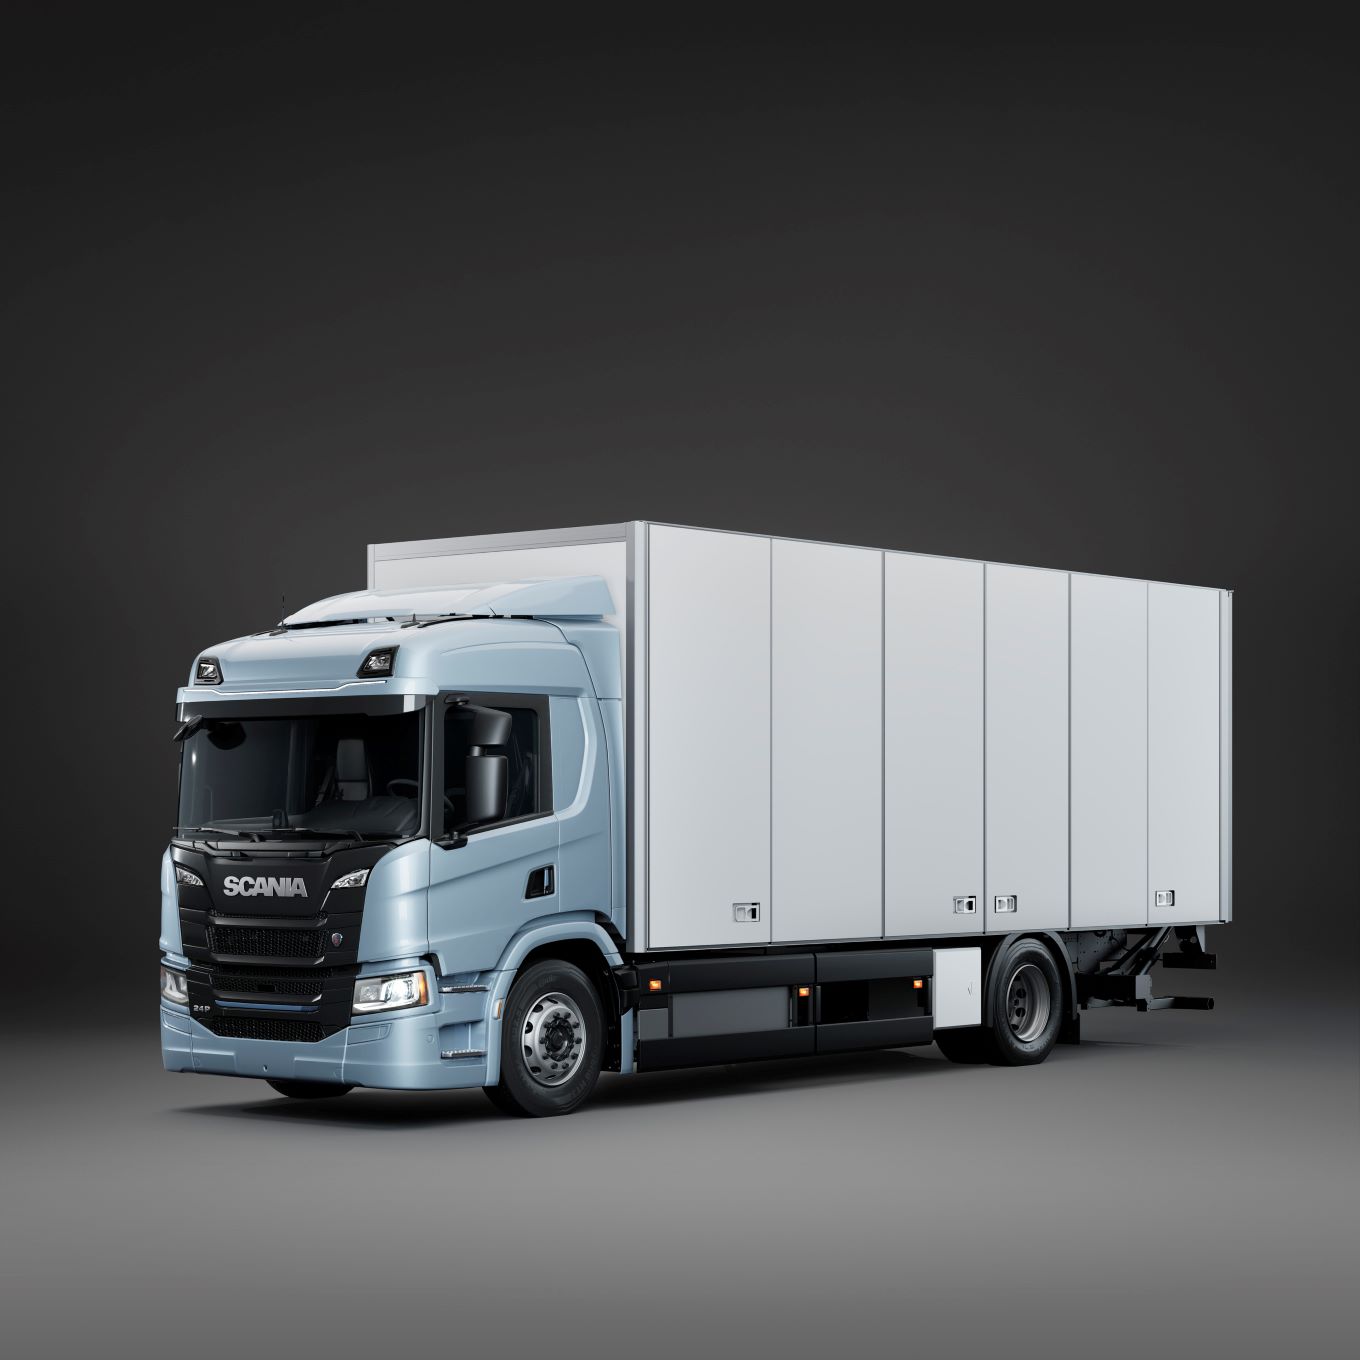 Scania amplía su gama de camiones eléctricos